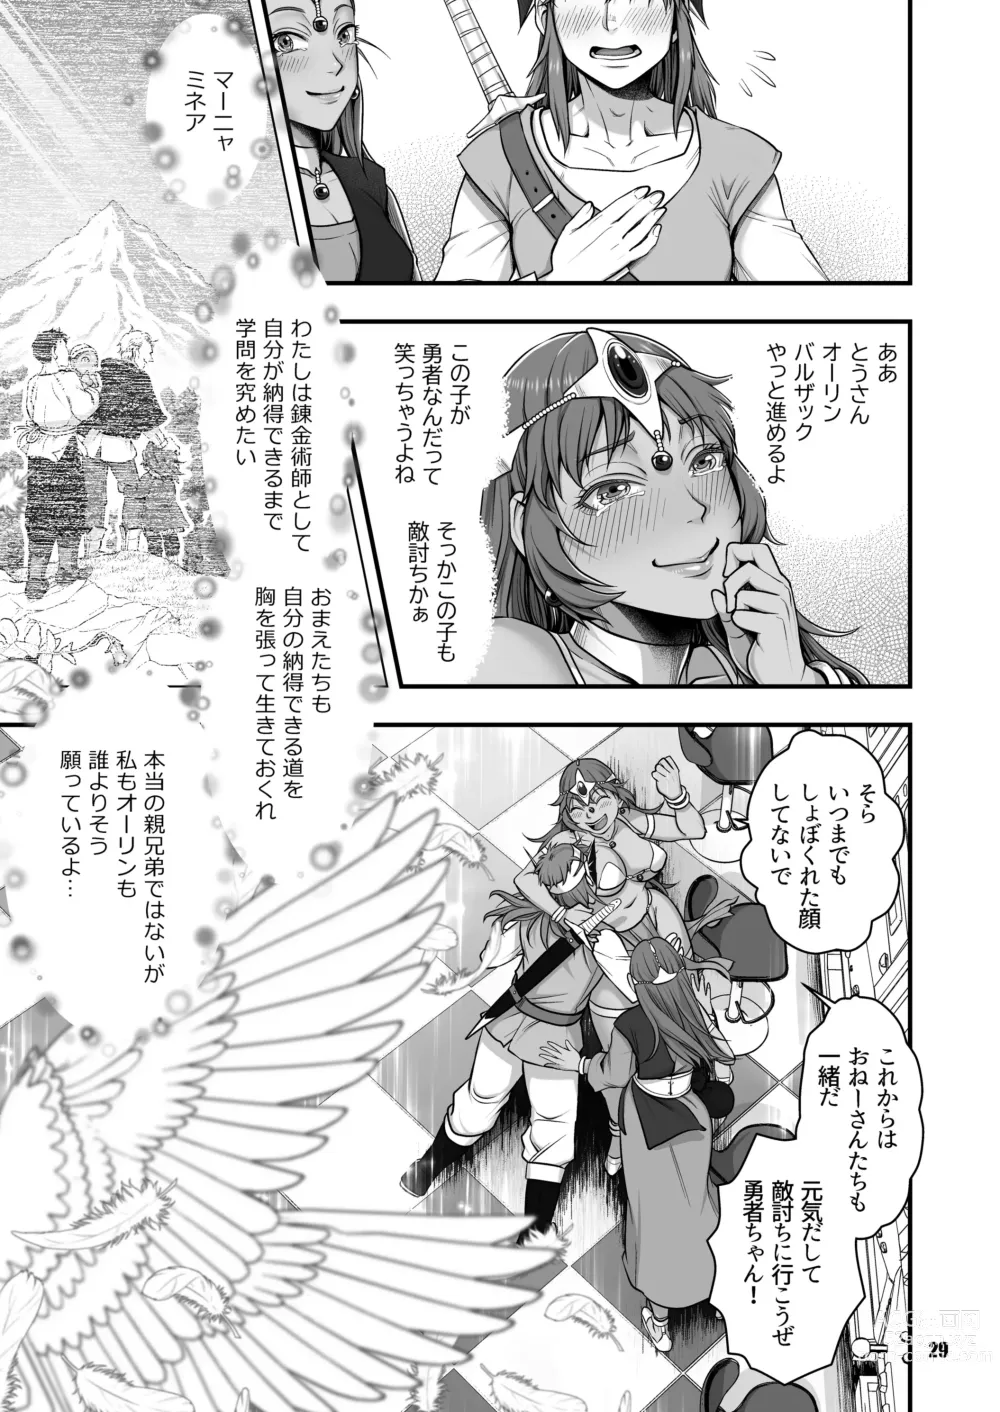 Page 29 of doujinshi Genkyou ~Cabecilla~ 5